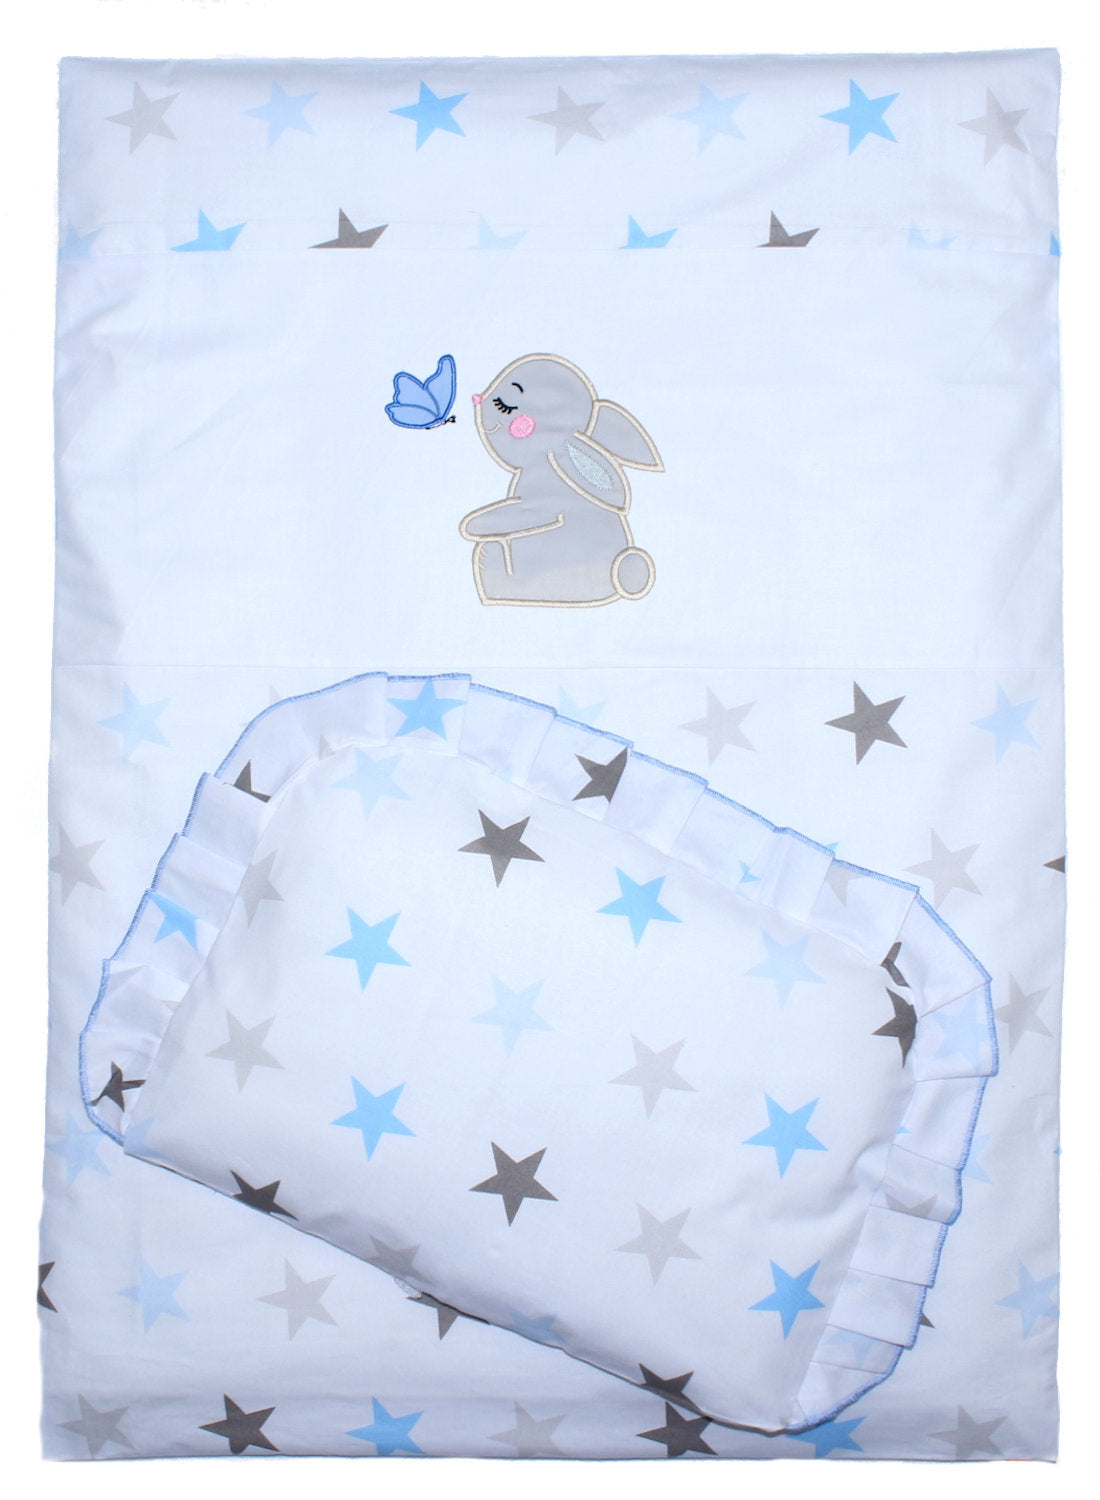 2- 4tlg Kinderwagenset - Hase- Star Blau - Bettwäsche für Kinderwagen Bezüge Decke Kissen